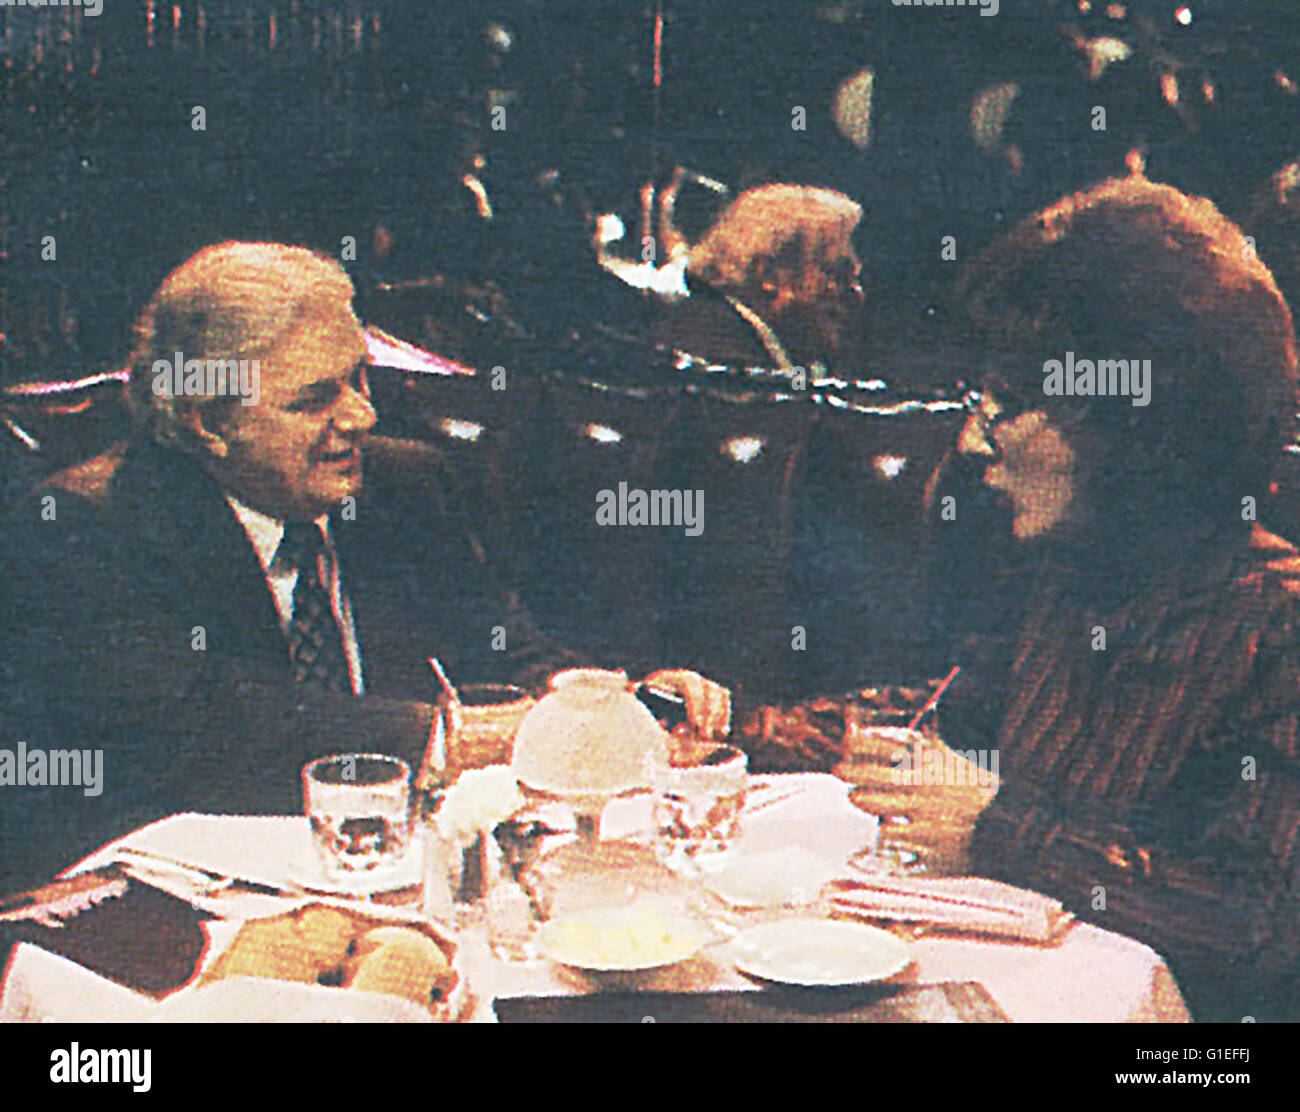 Tootsie / Dustin Hoffman, Stock Photo